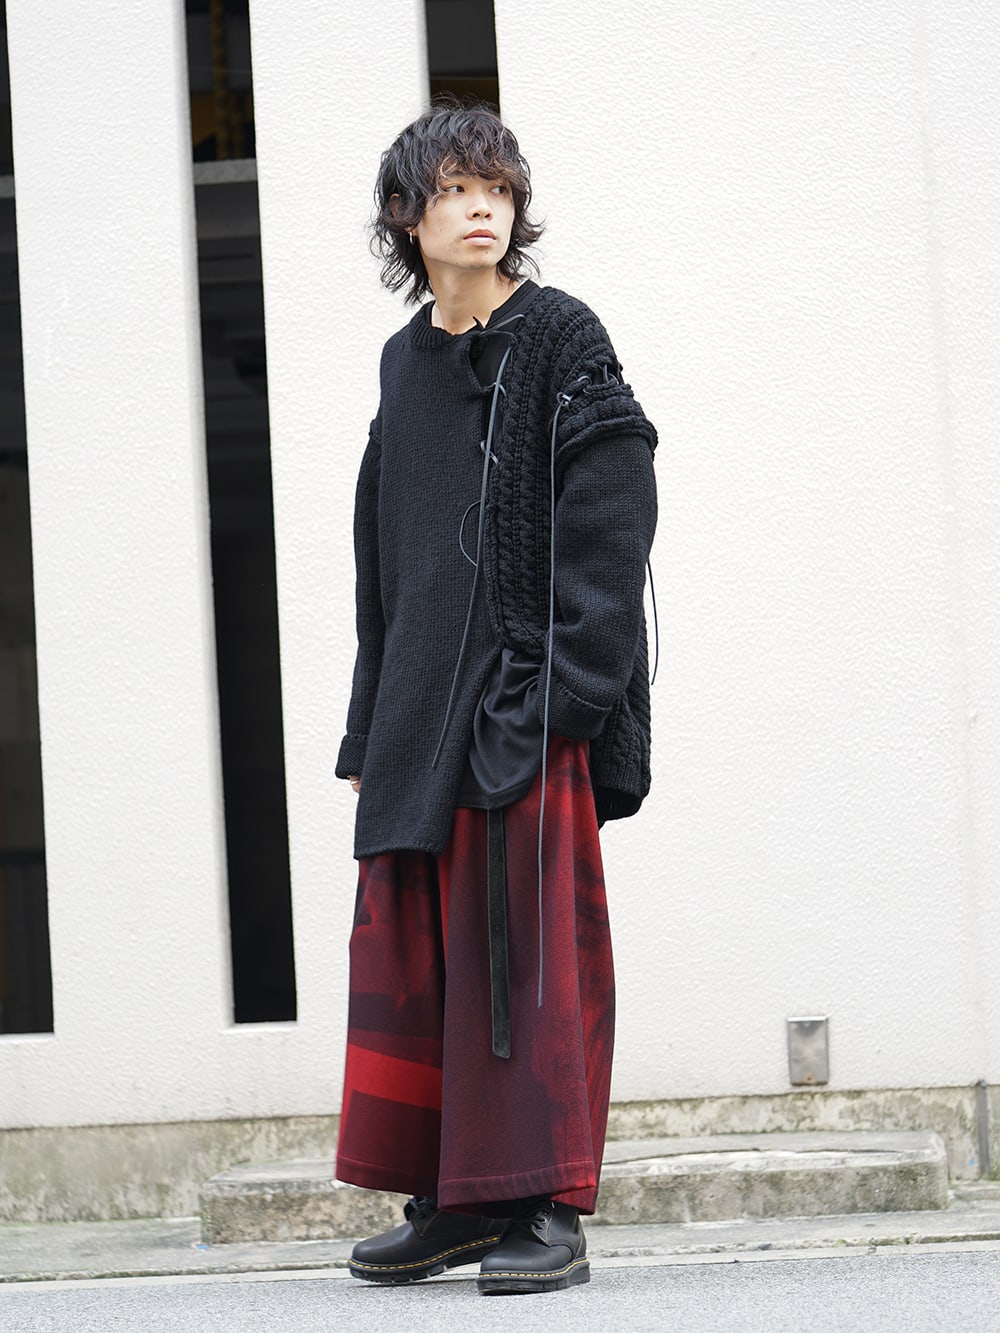 Yohji Yamamoto 18AW Leather Lace Seam Grafting Knit Style ...